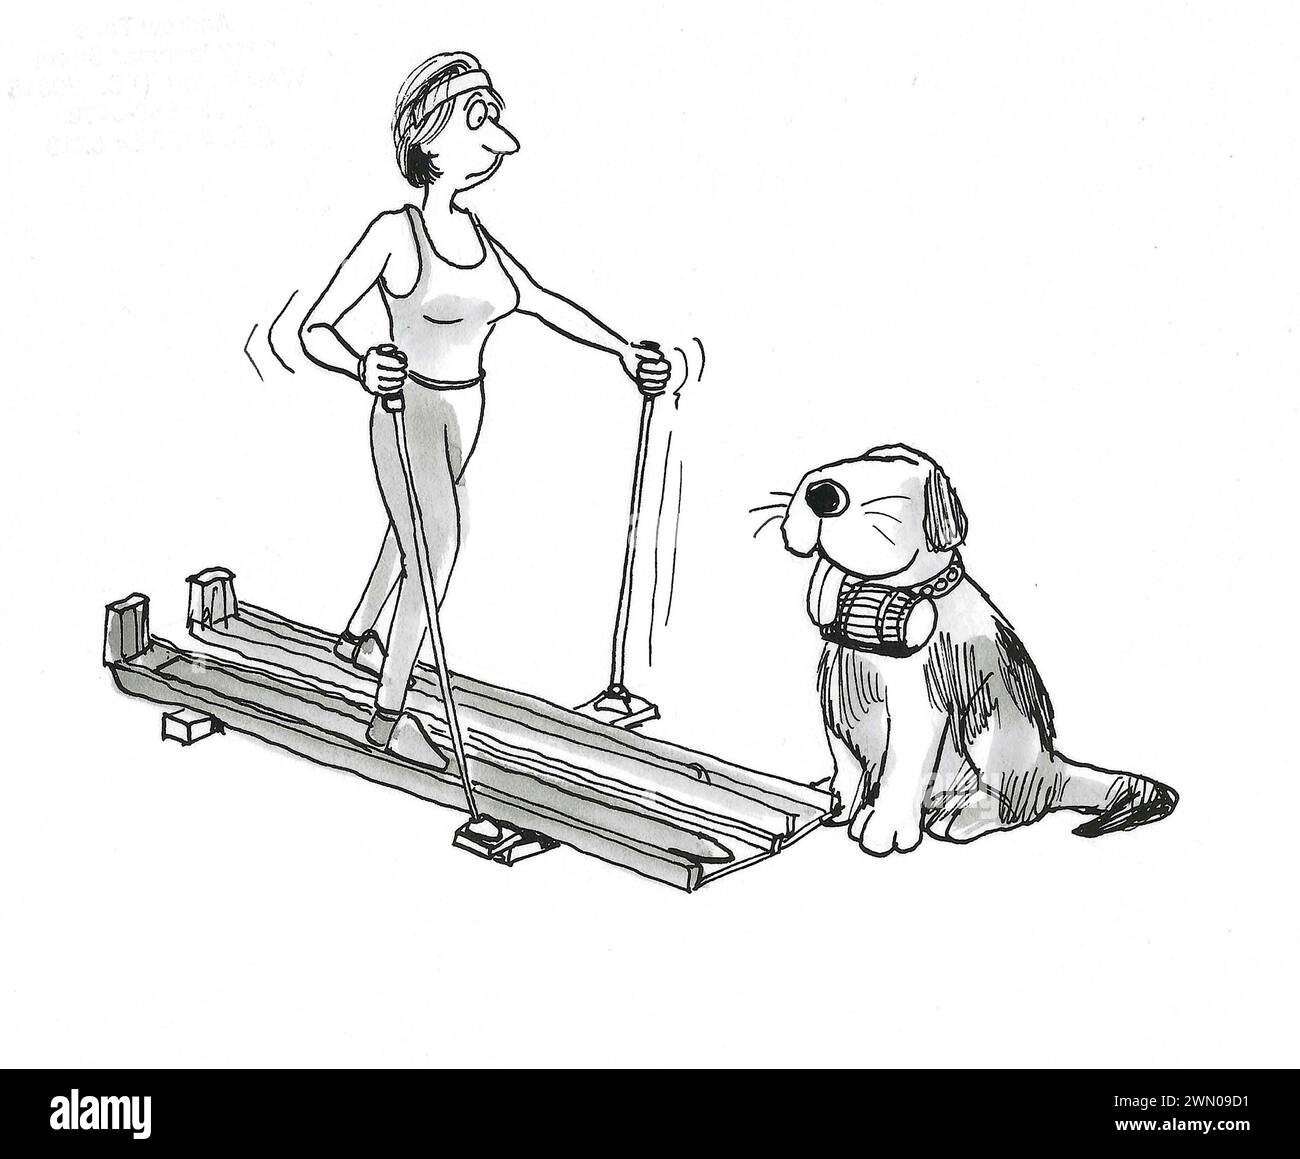 BW-Cartoon einer Frau, die auf Indoor-Skiern mit einem Berghund rutscht, wenn nötig. Stockfoto